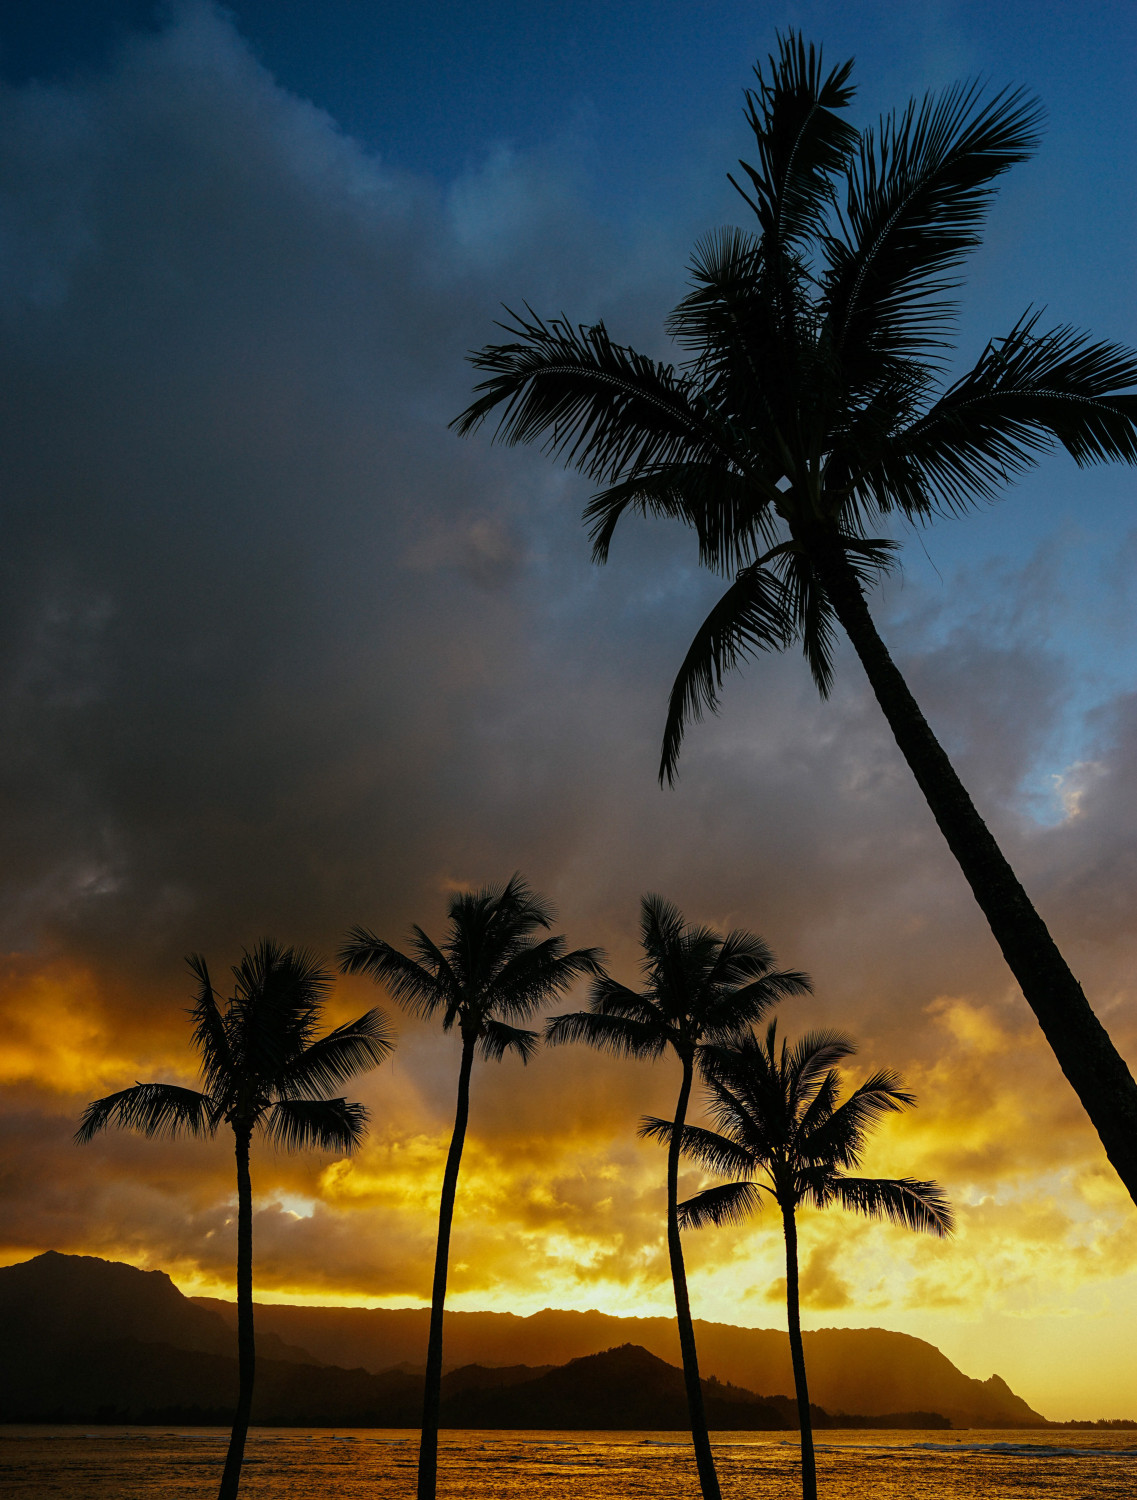 st-regis-sunset-kauai-dante-vincent-photography